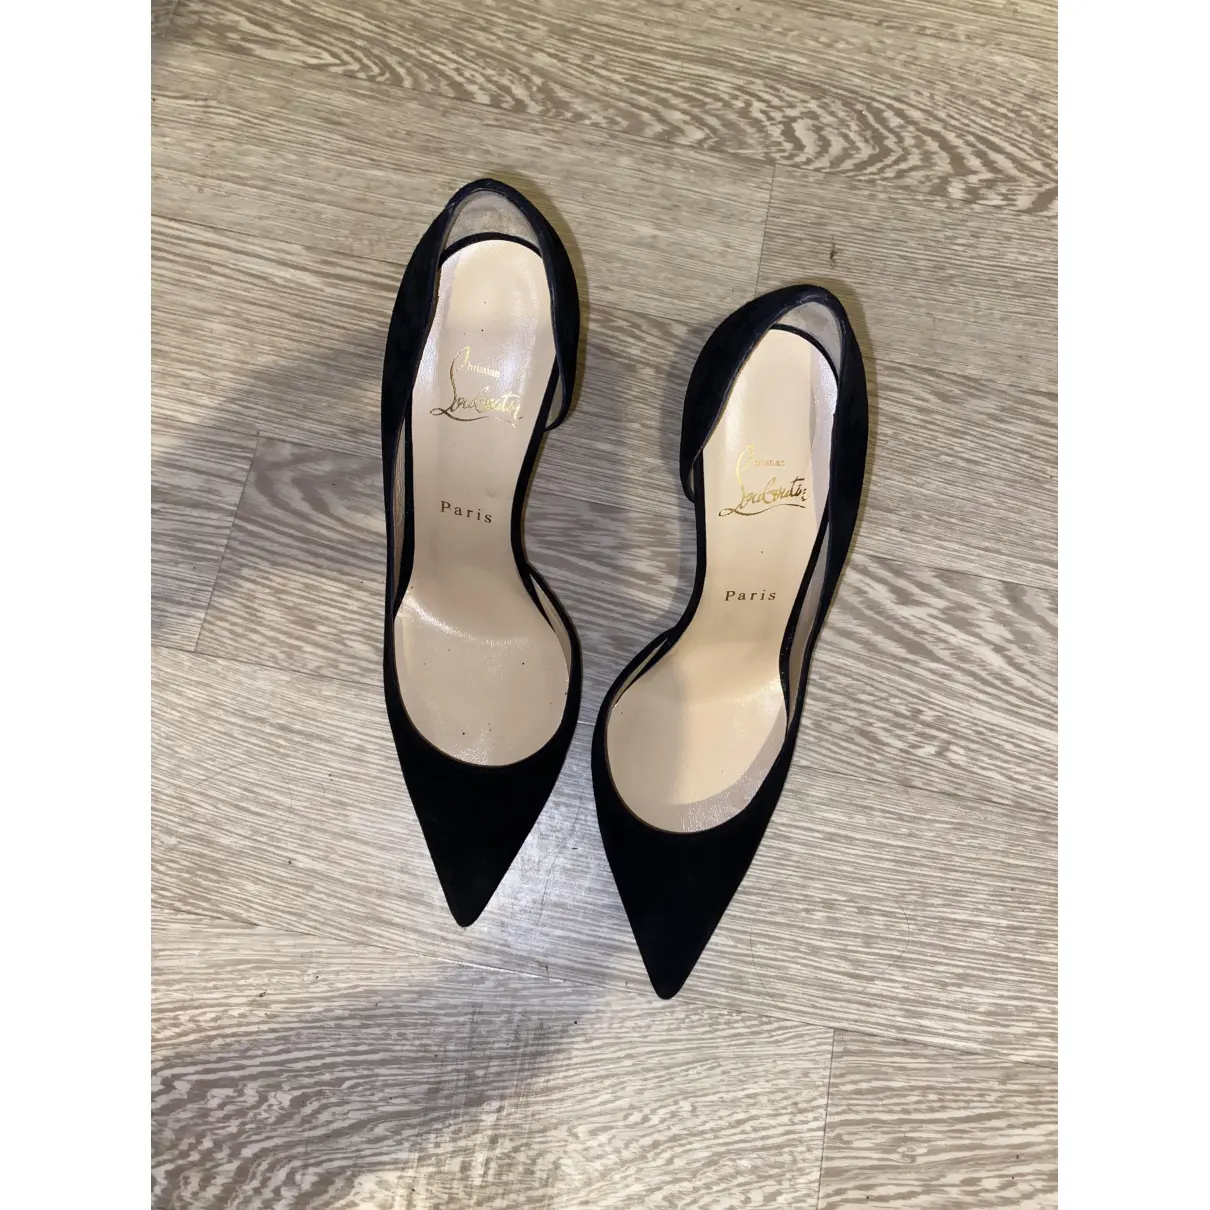 Buy Christian Louboutin Iriza heels online